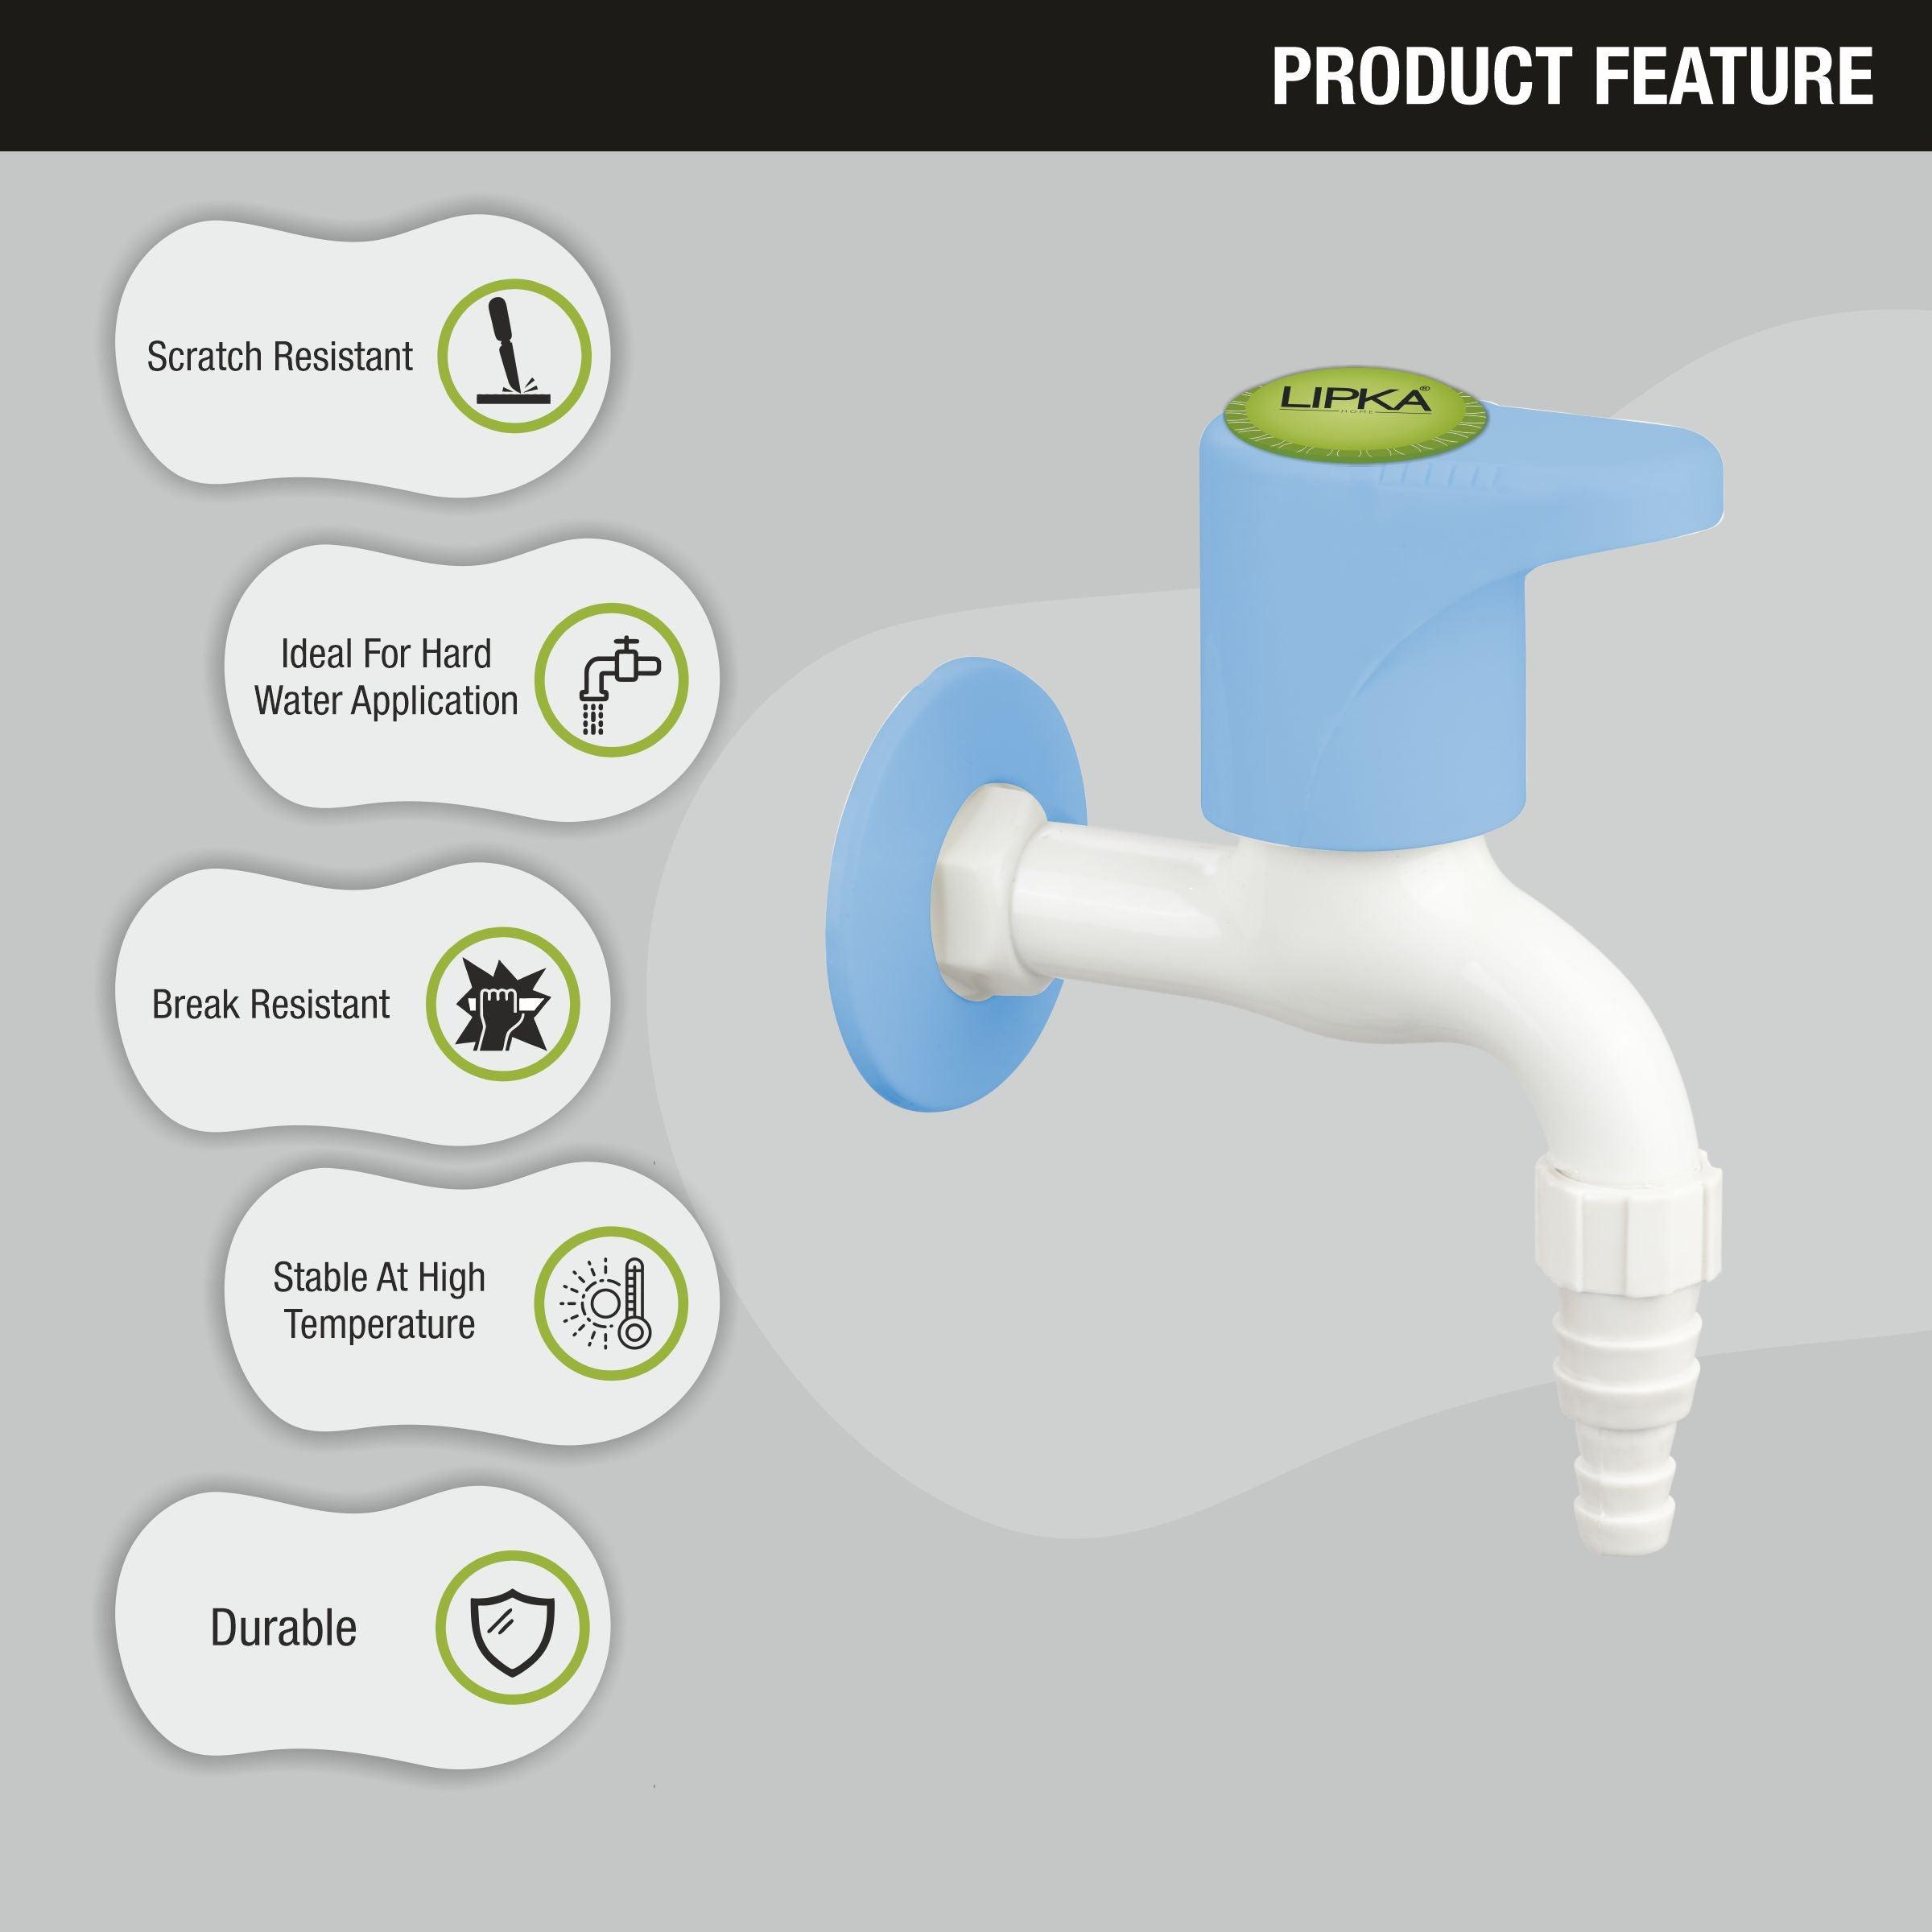 Glory Nozzle Bib Tap PTMT Faucet features